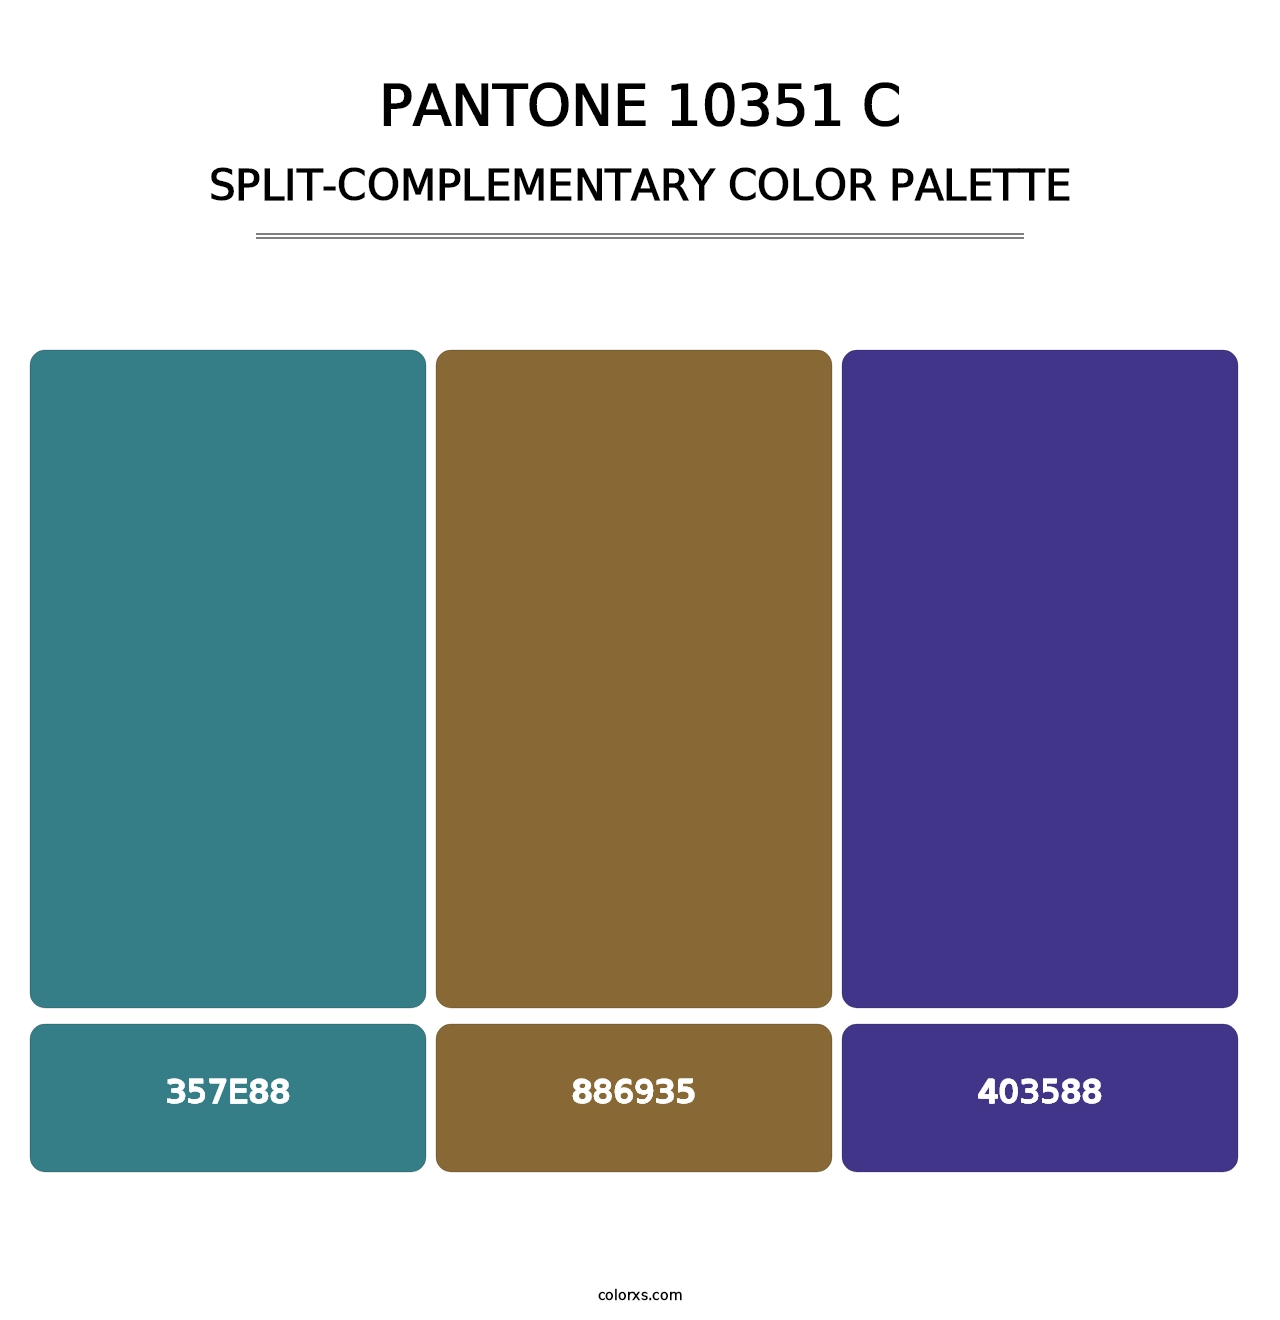 PANTONE 10351 C - Split-Complementary Color Palette